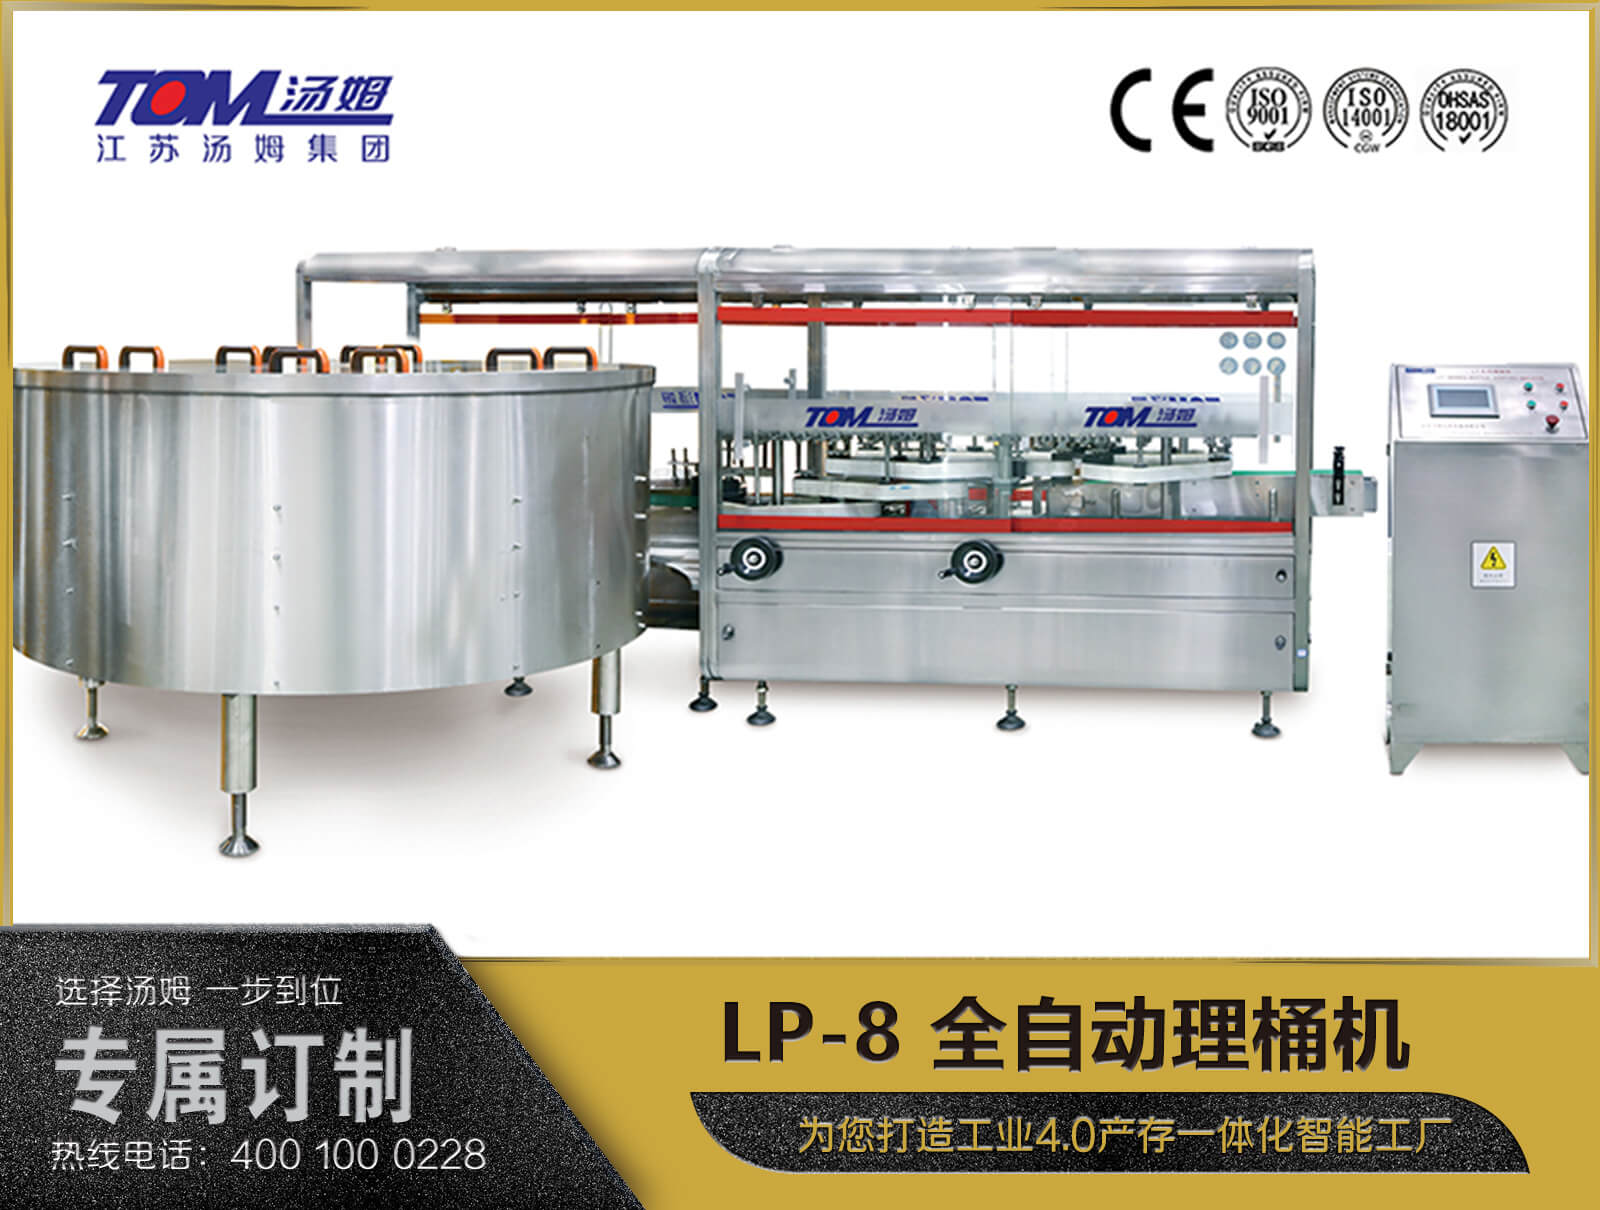 LP-8 全自动理桶机